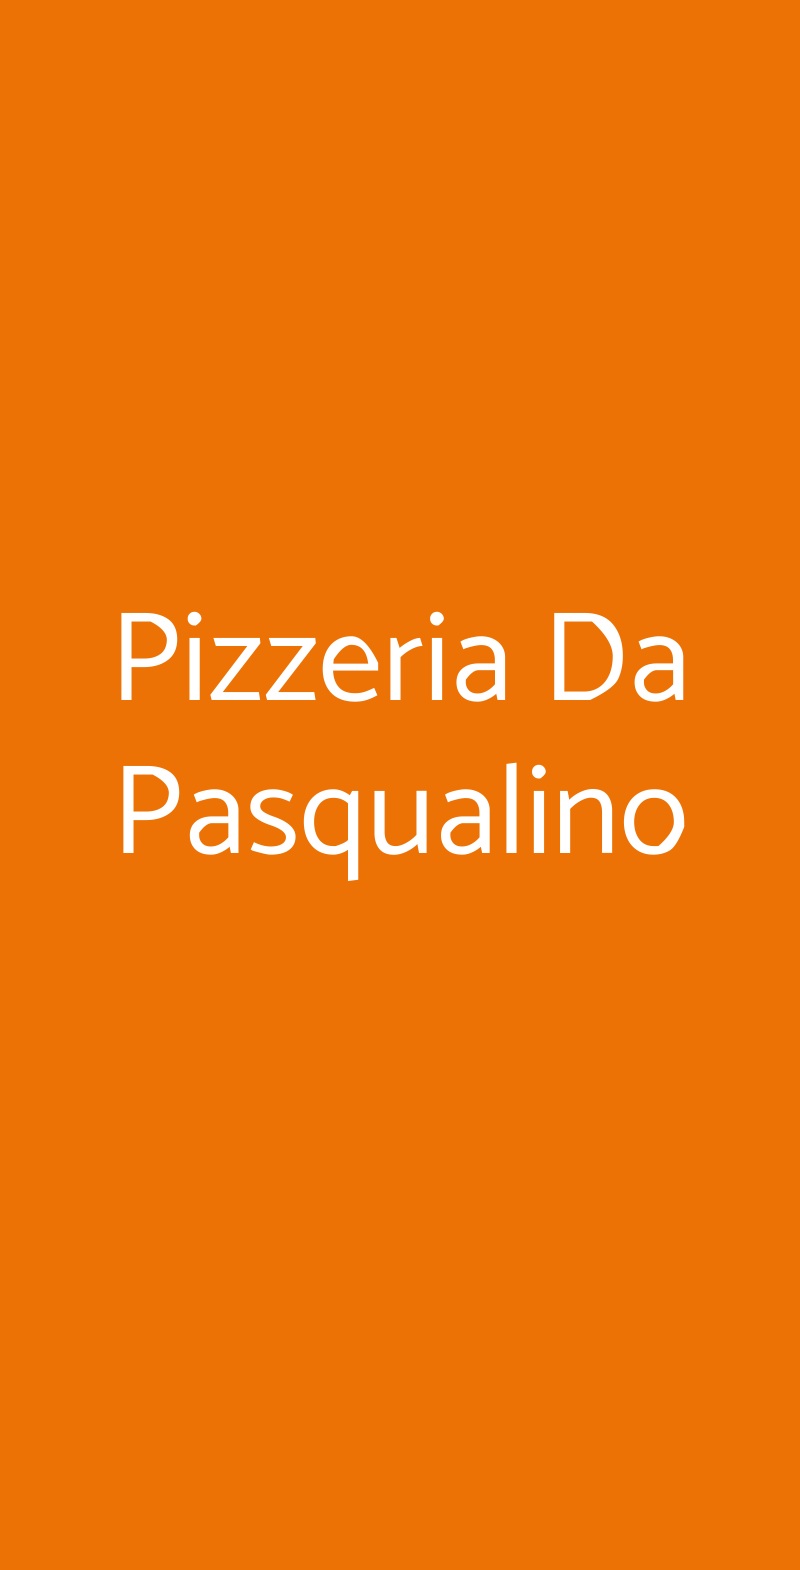 Pizzeria Da Pasqualino Napoli menù 1 pagina